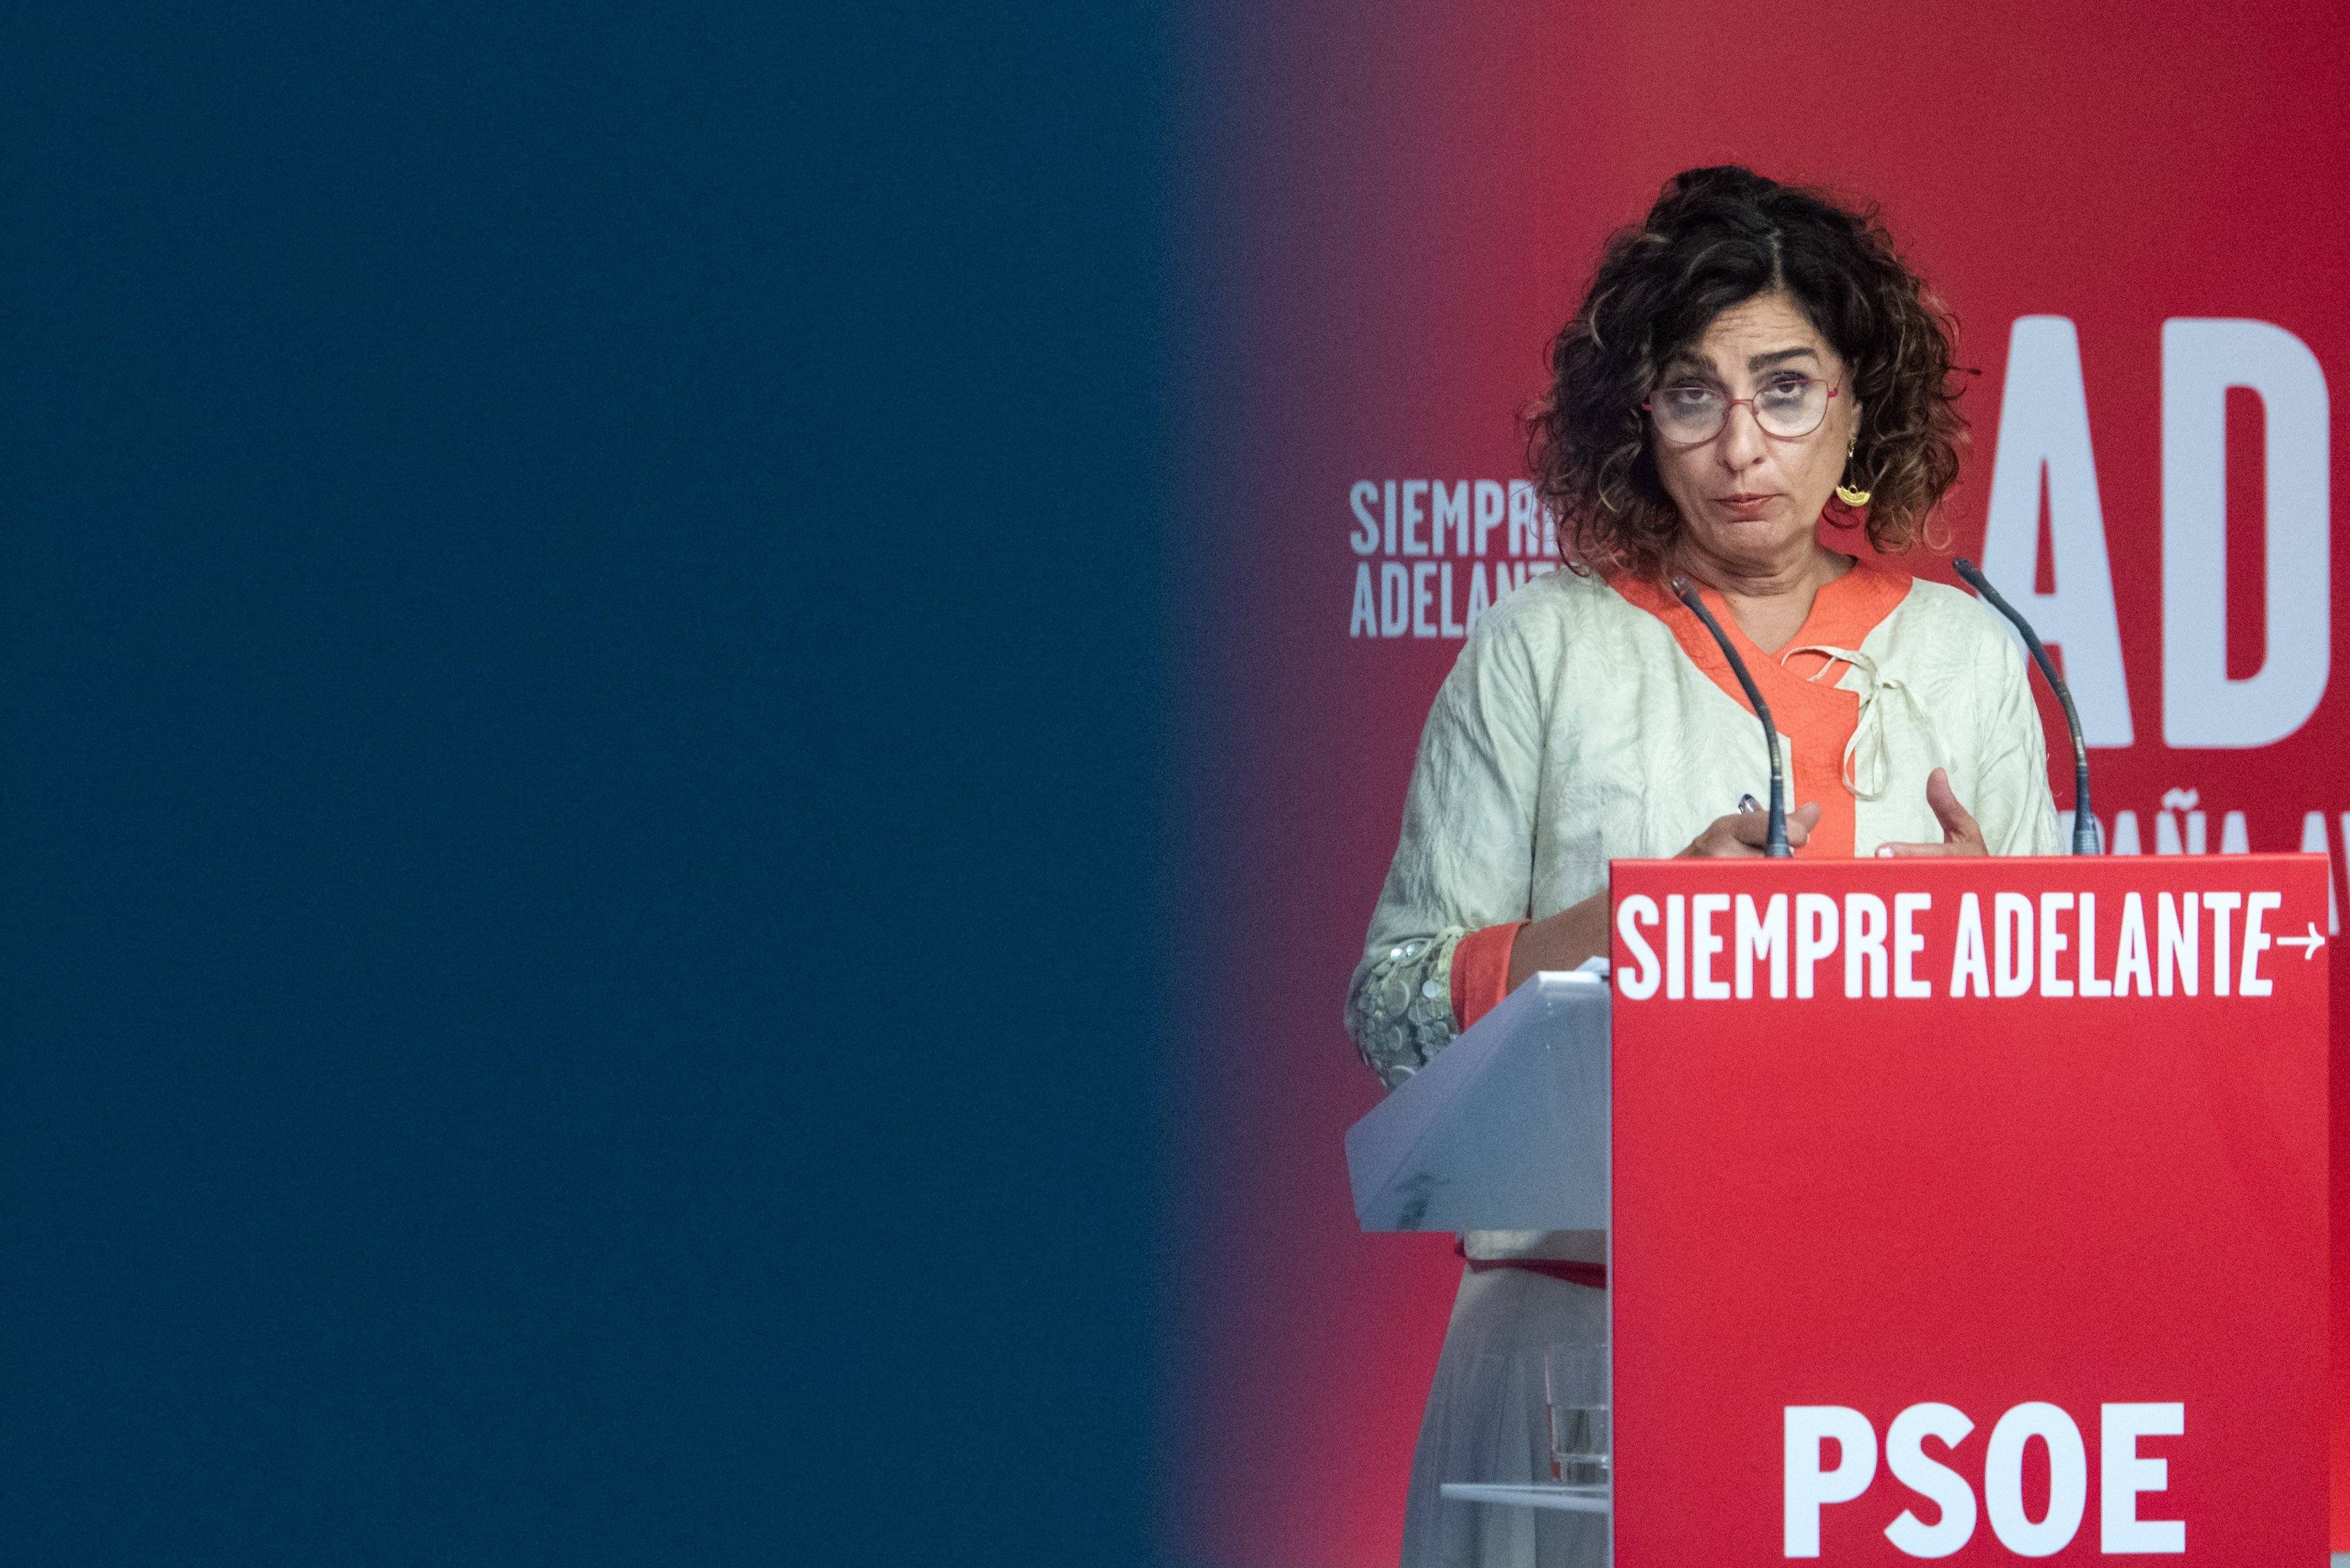 El PSOE treu ferro als discursos “de màxims” d’ERC i Junts perquè “coneixen els límits”